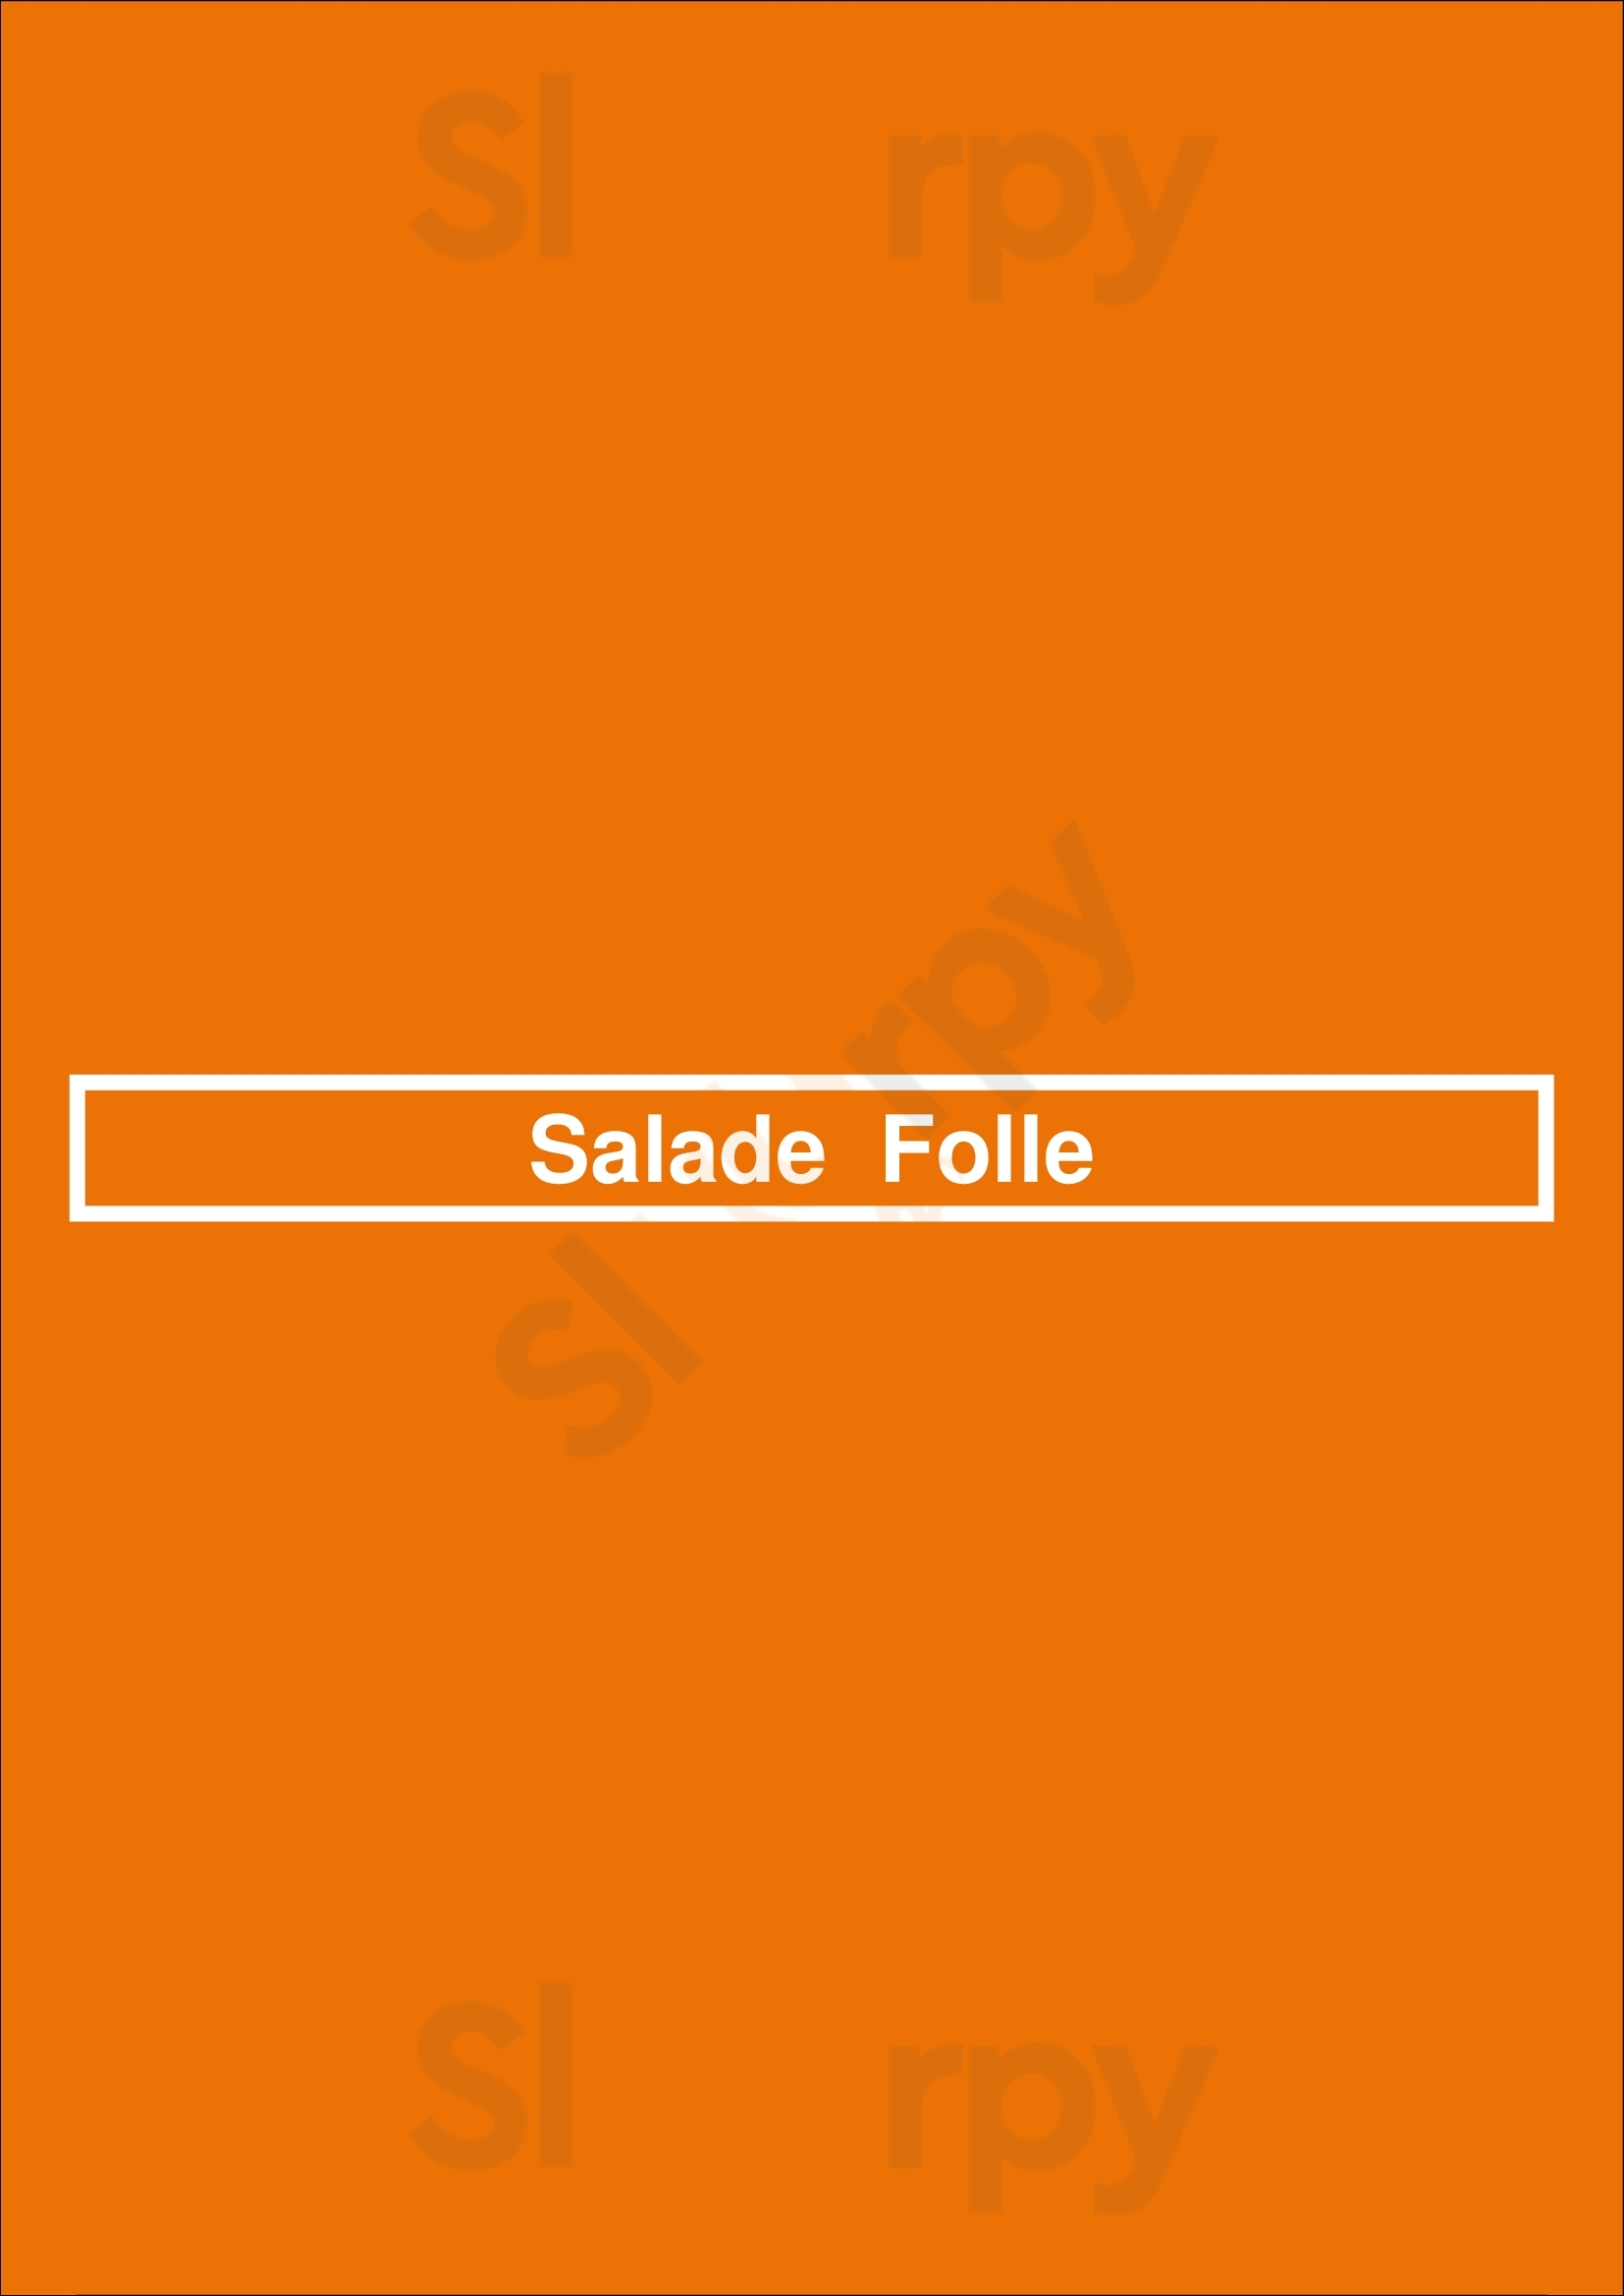 Salade  Folle Bruges Menu - 1